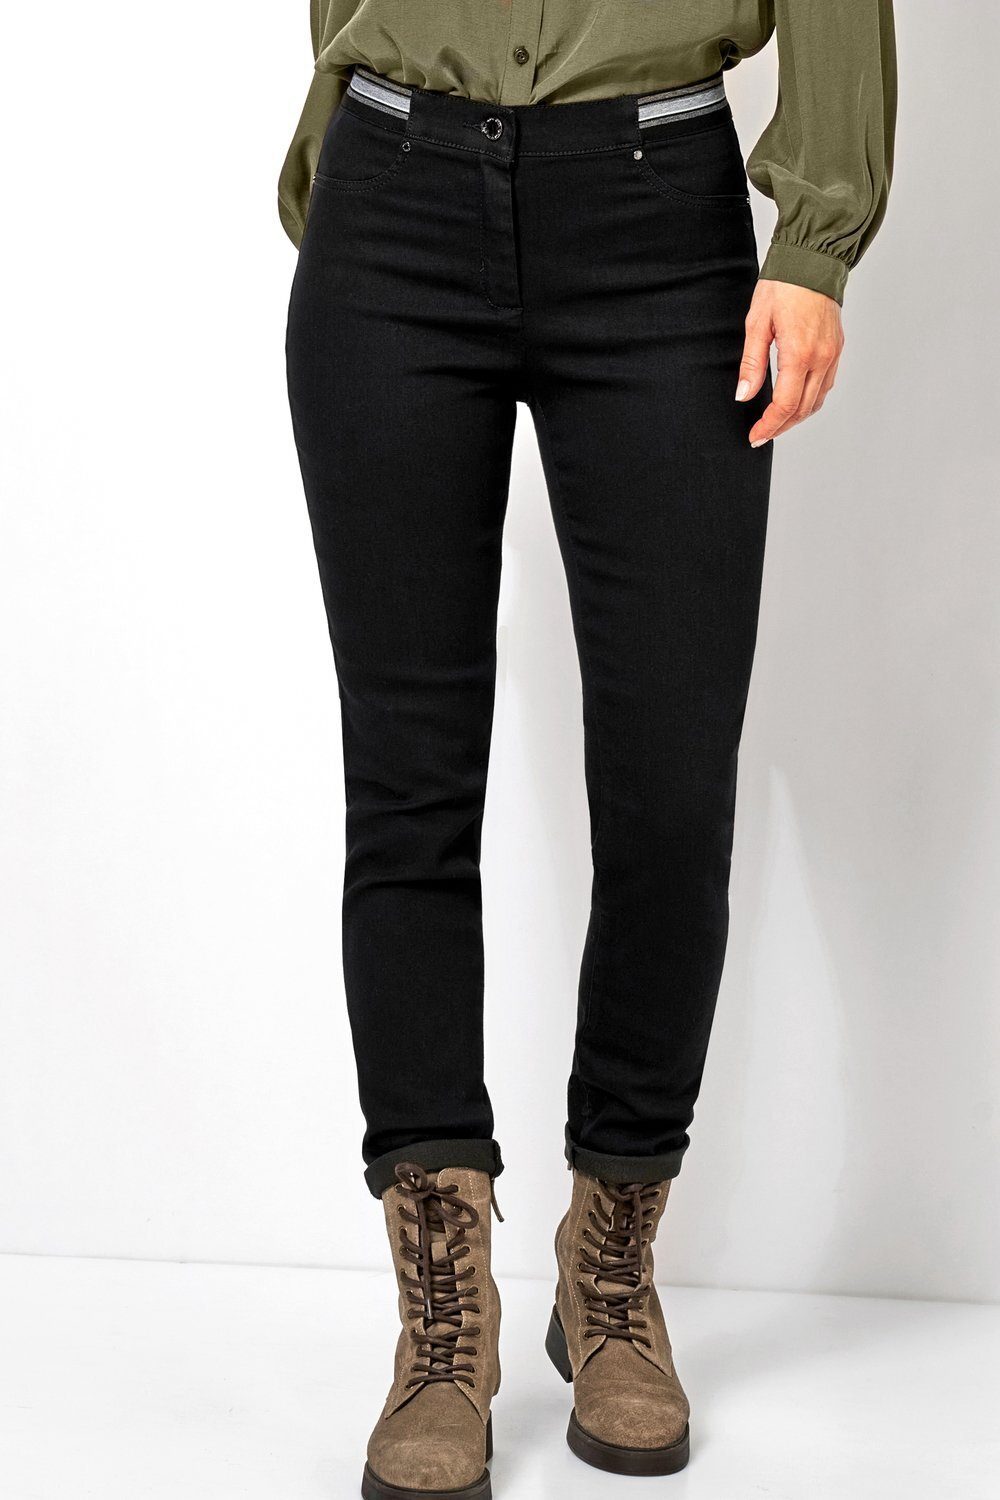 TONI Ankle-Jeans Jenny mit gestreiftem Gummizug schwarz - 089